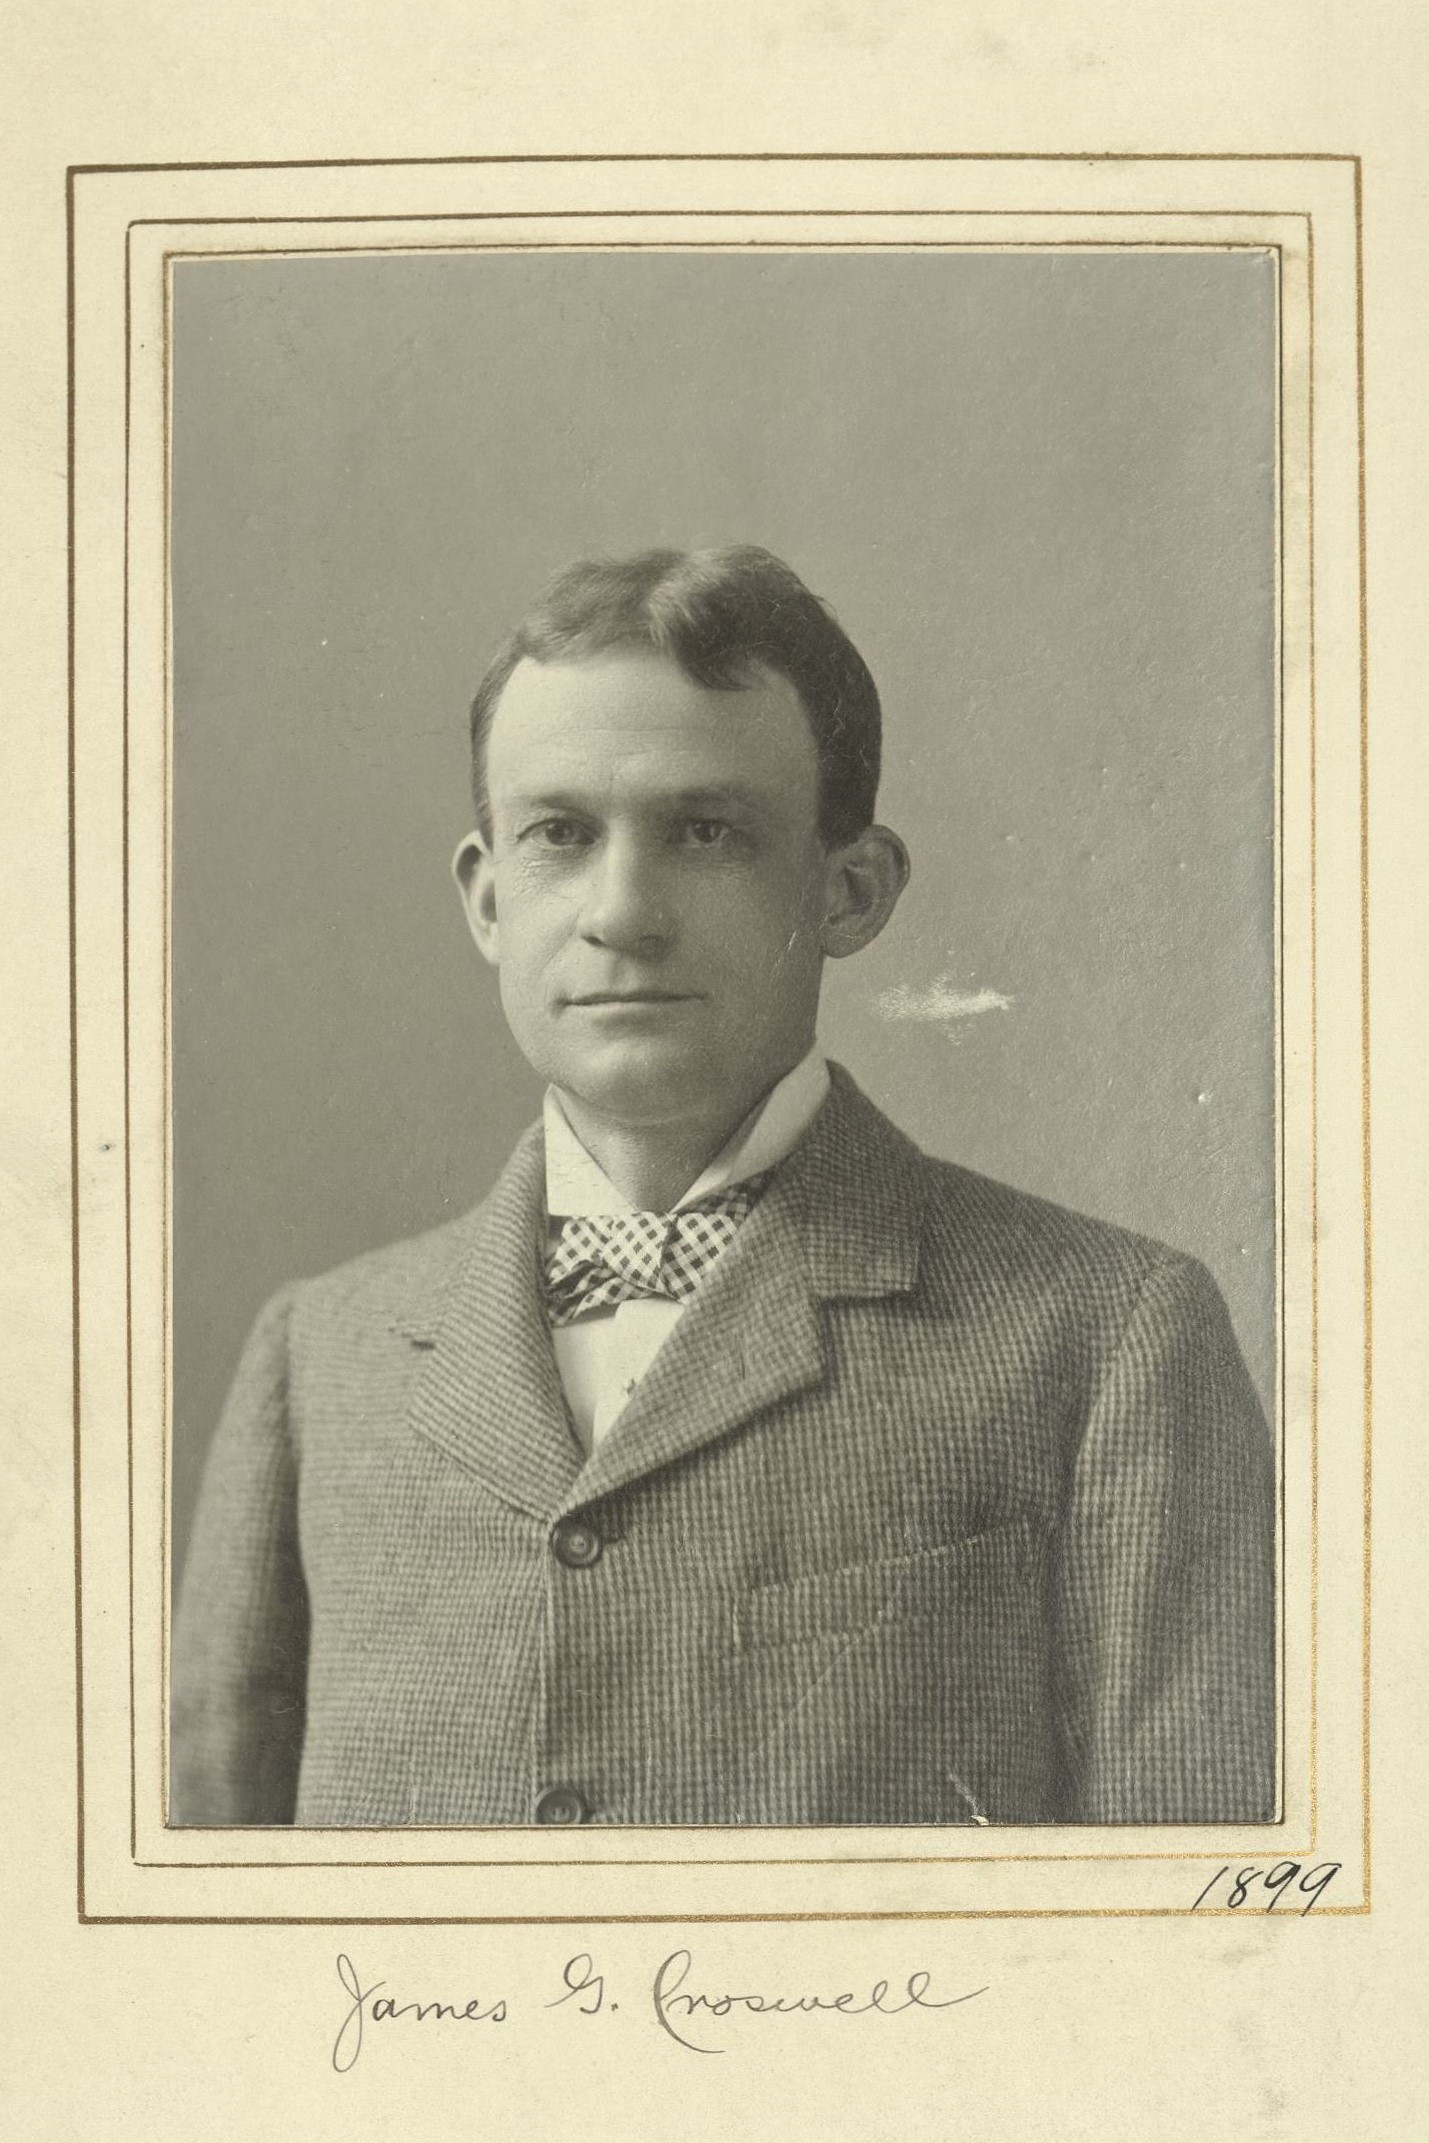 Member portrait of James G. Croswell